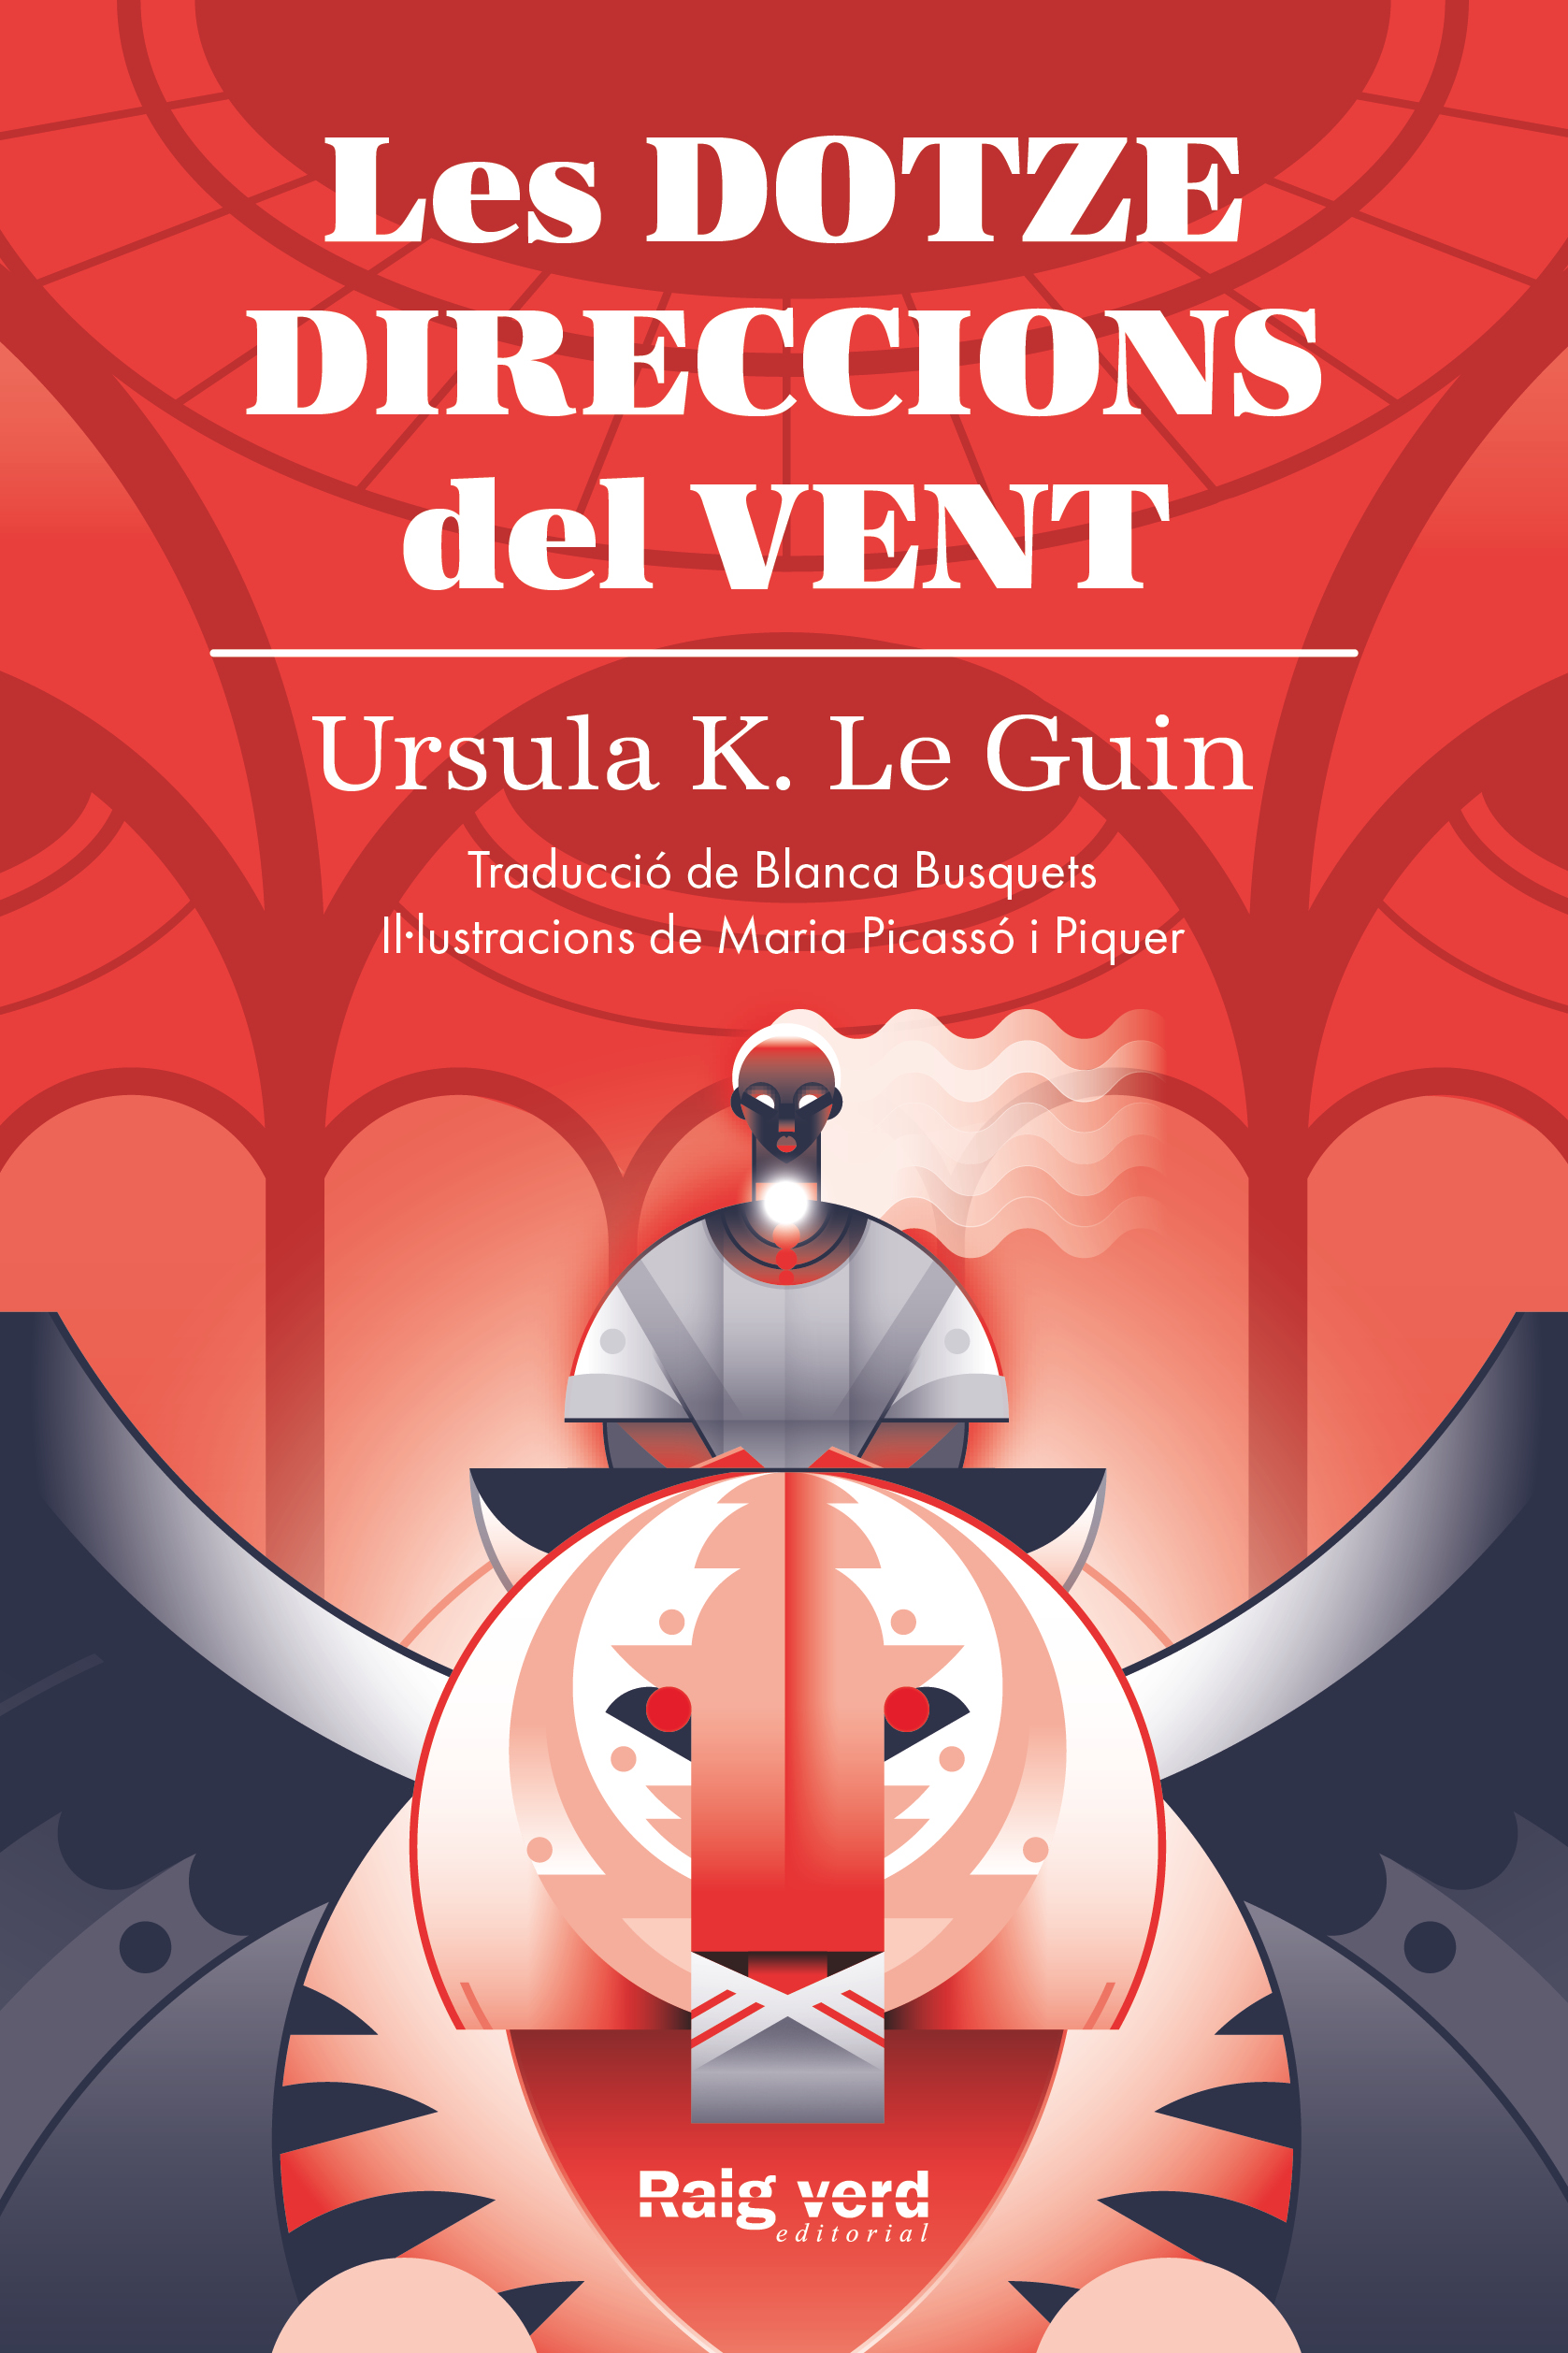 LES DOTZE DIRECCIONS DEL VENT - Ursula K. Le Guin